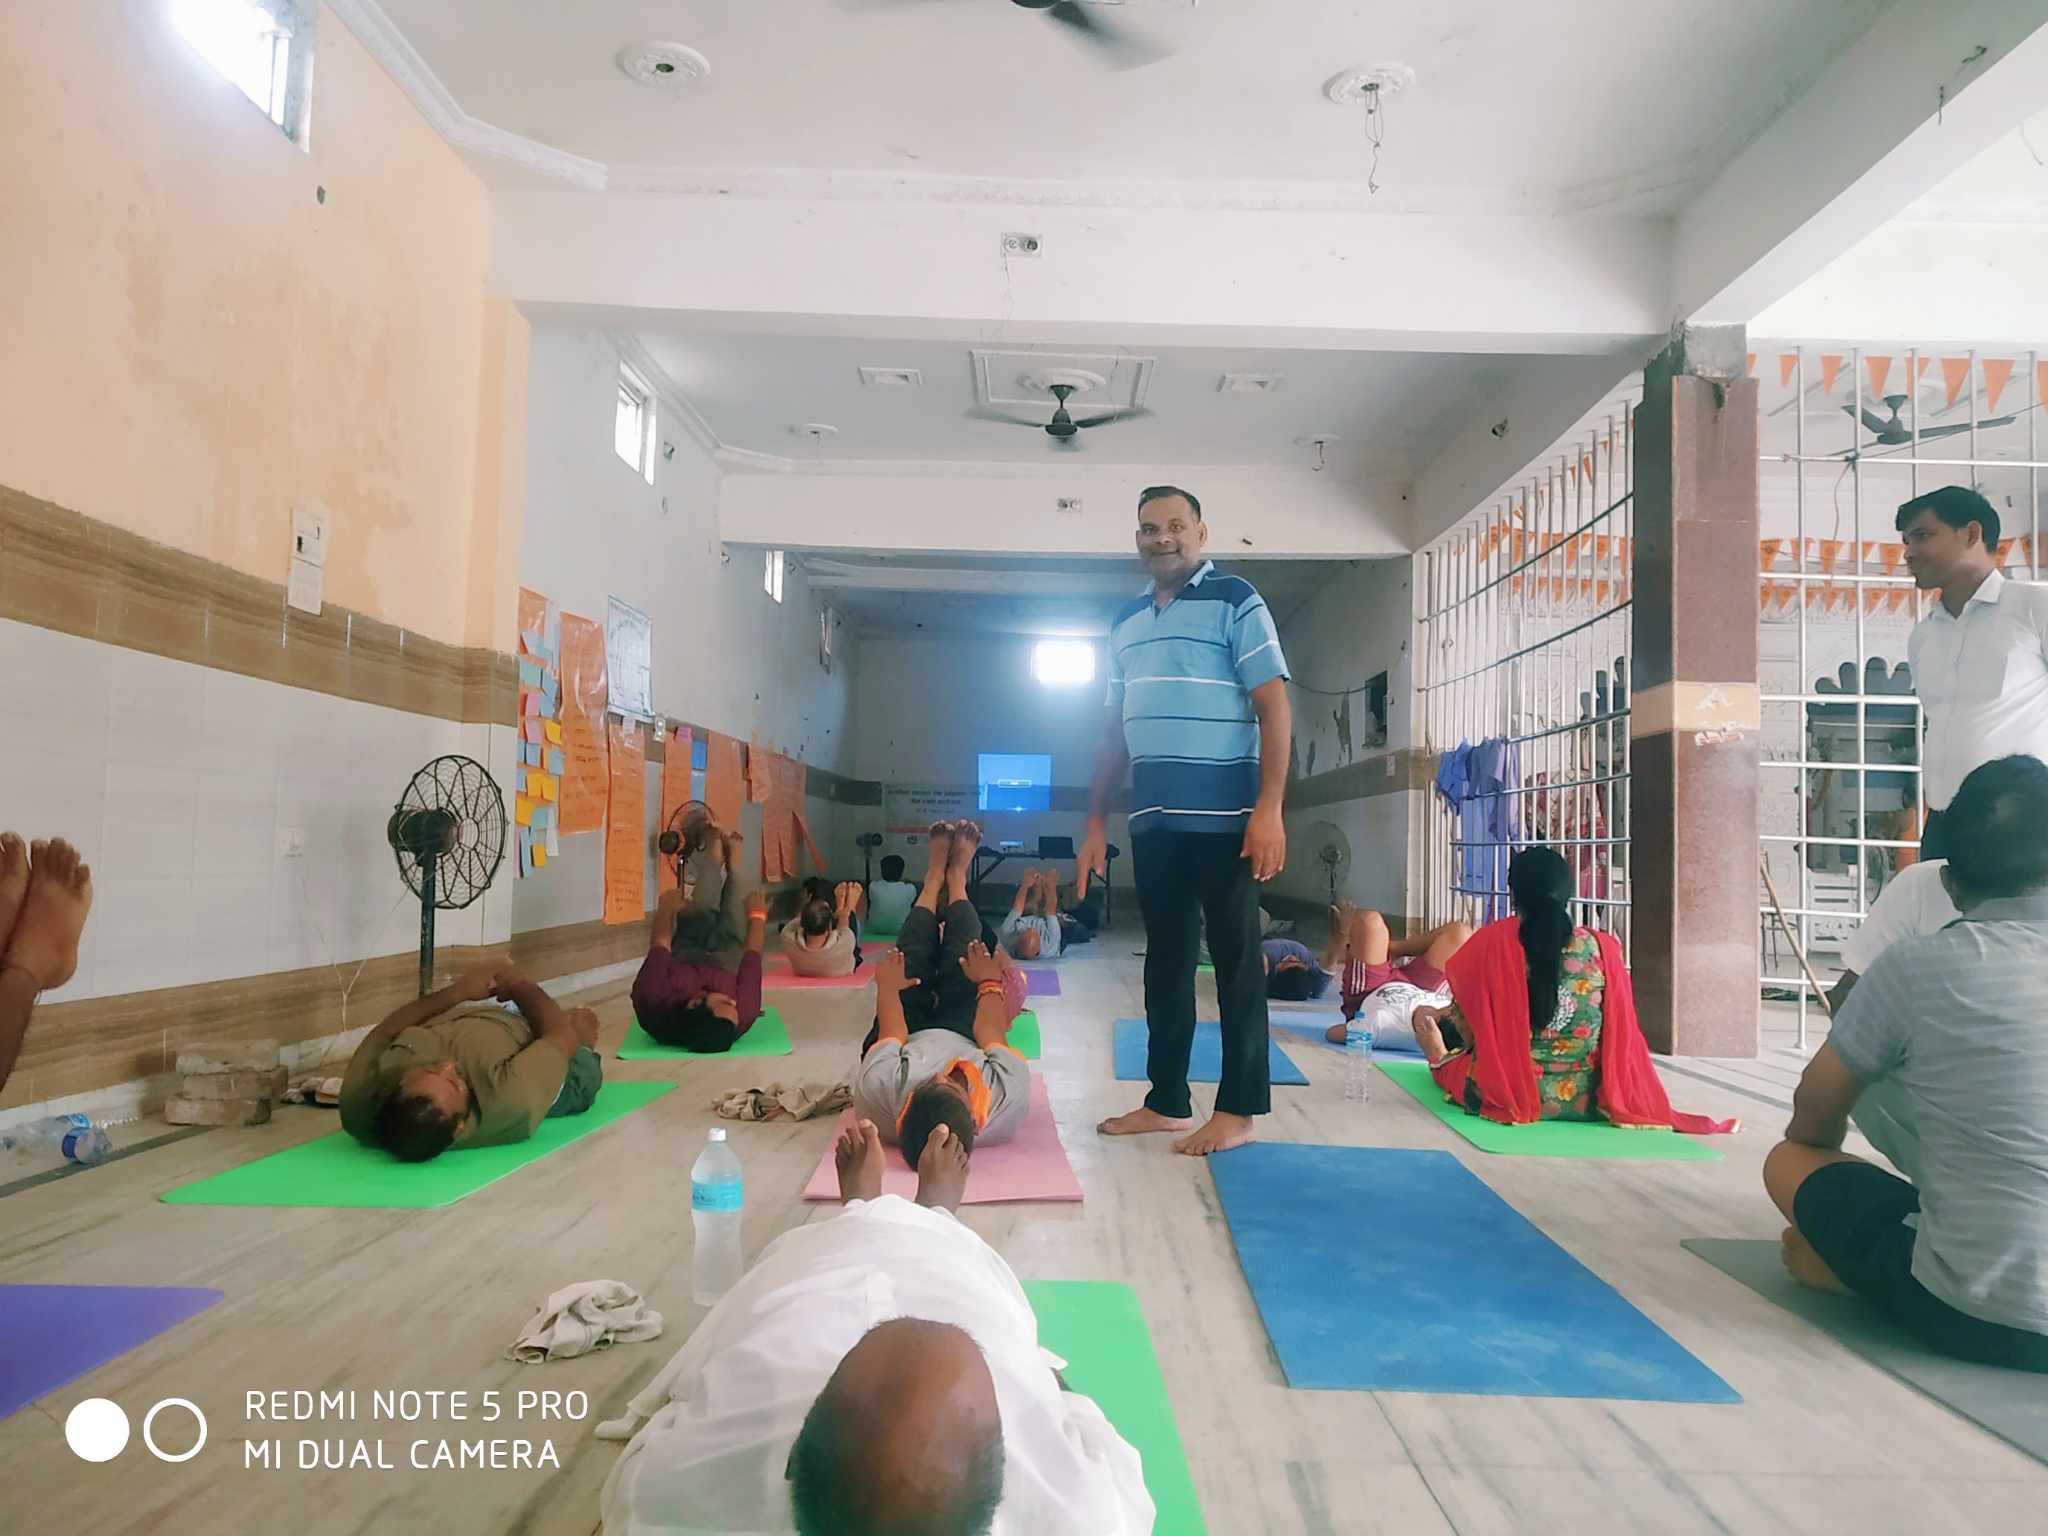 मानसिक स्वास्थ्य सेवा तथा योग ध्यान दुई दिने कार्यक्रम कृष्णनगरमा सम्पन्न